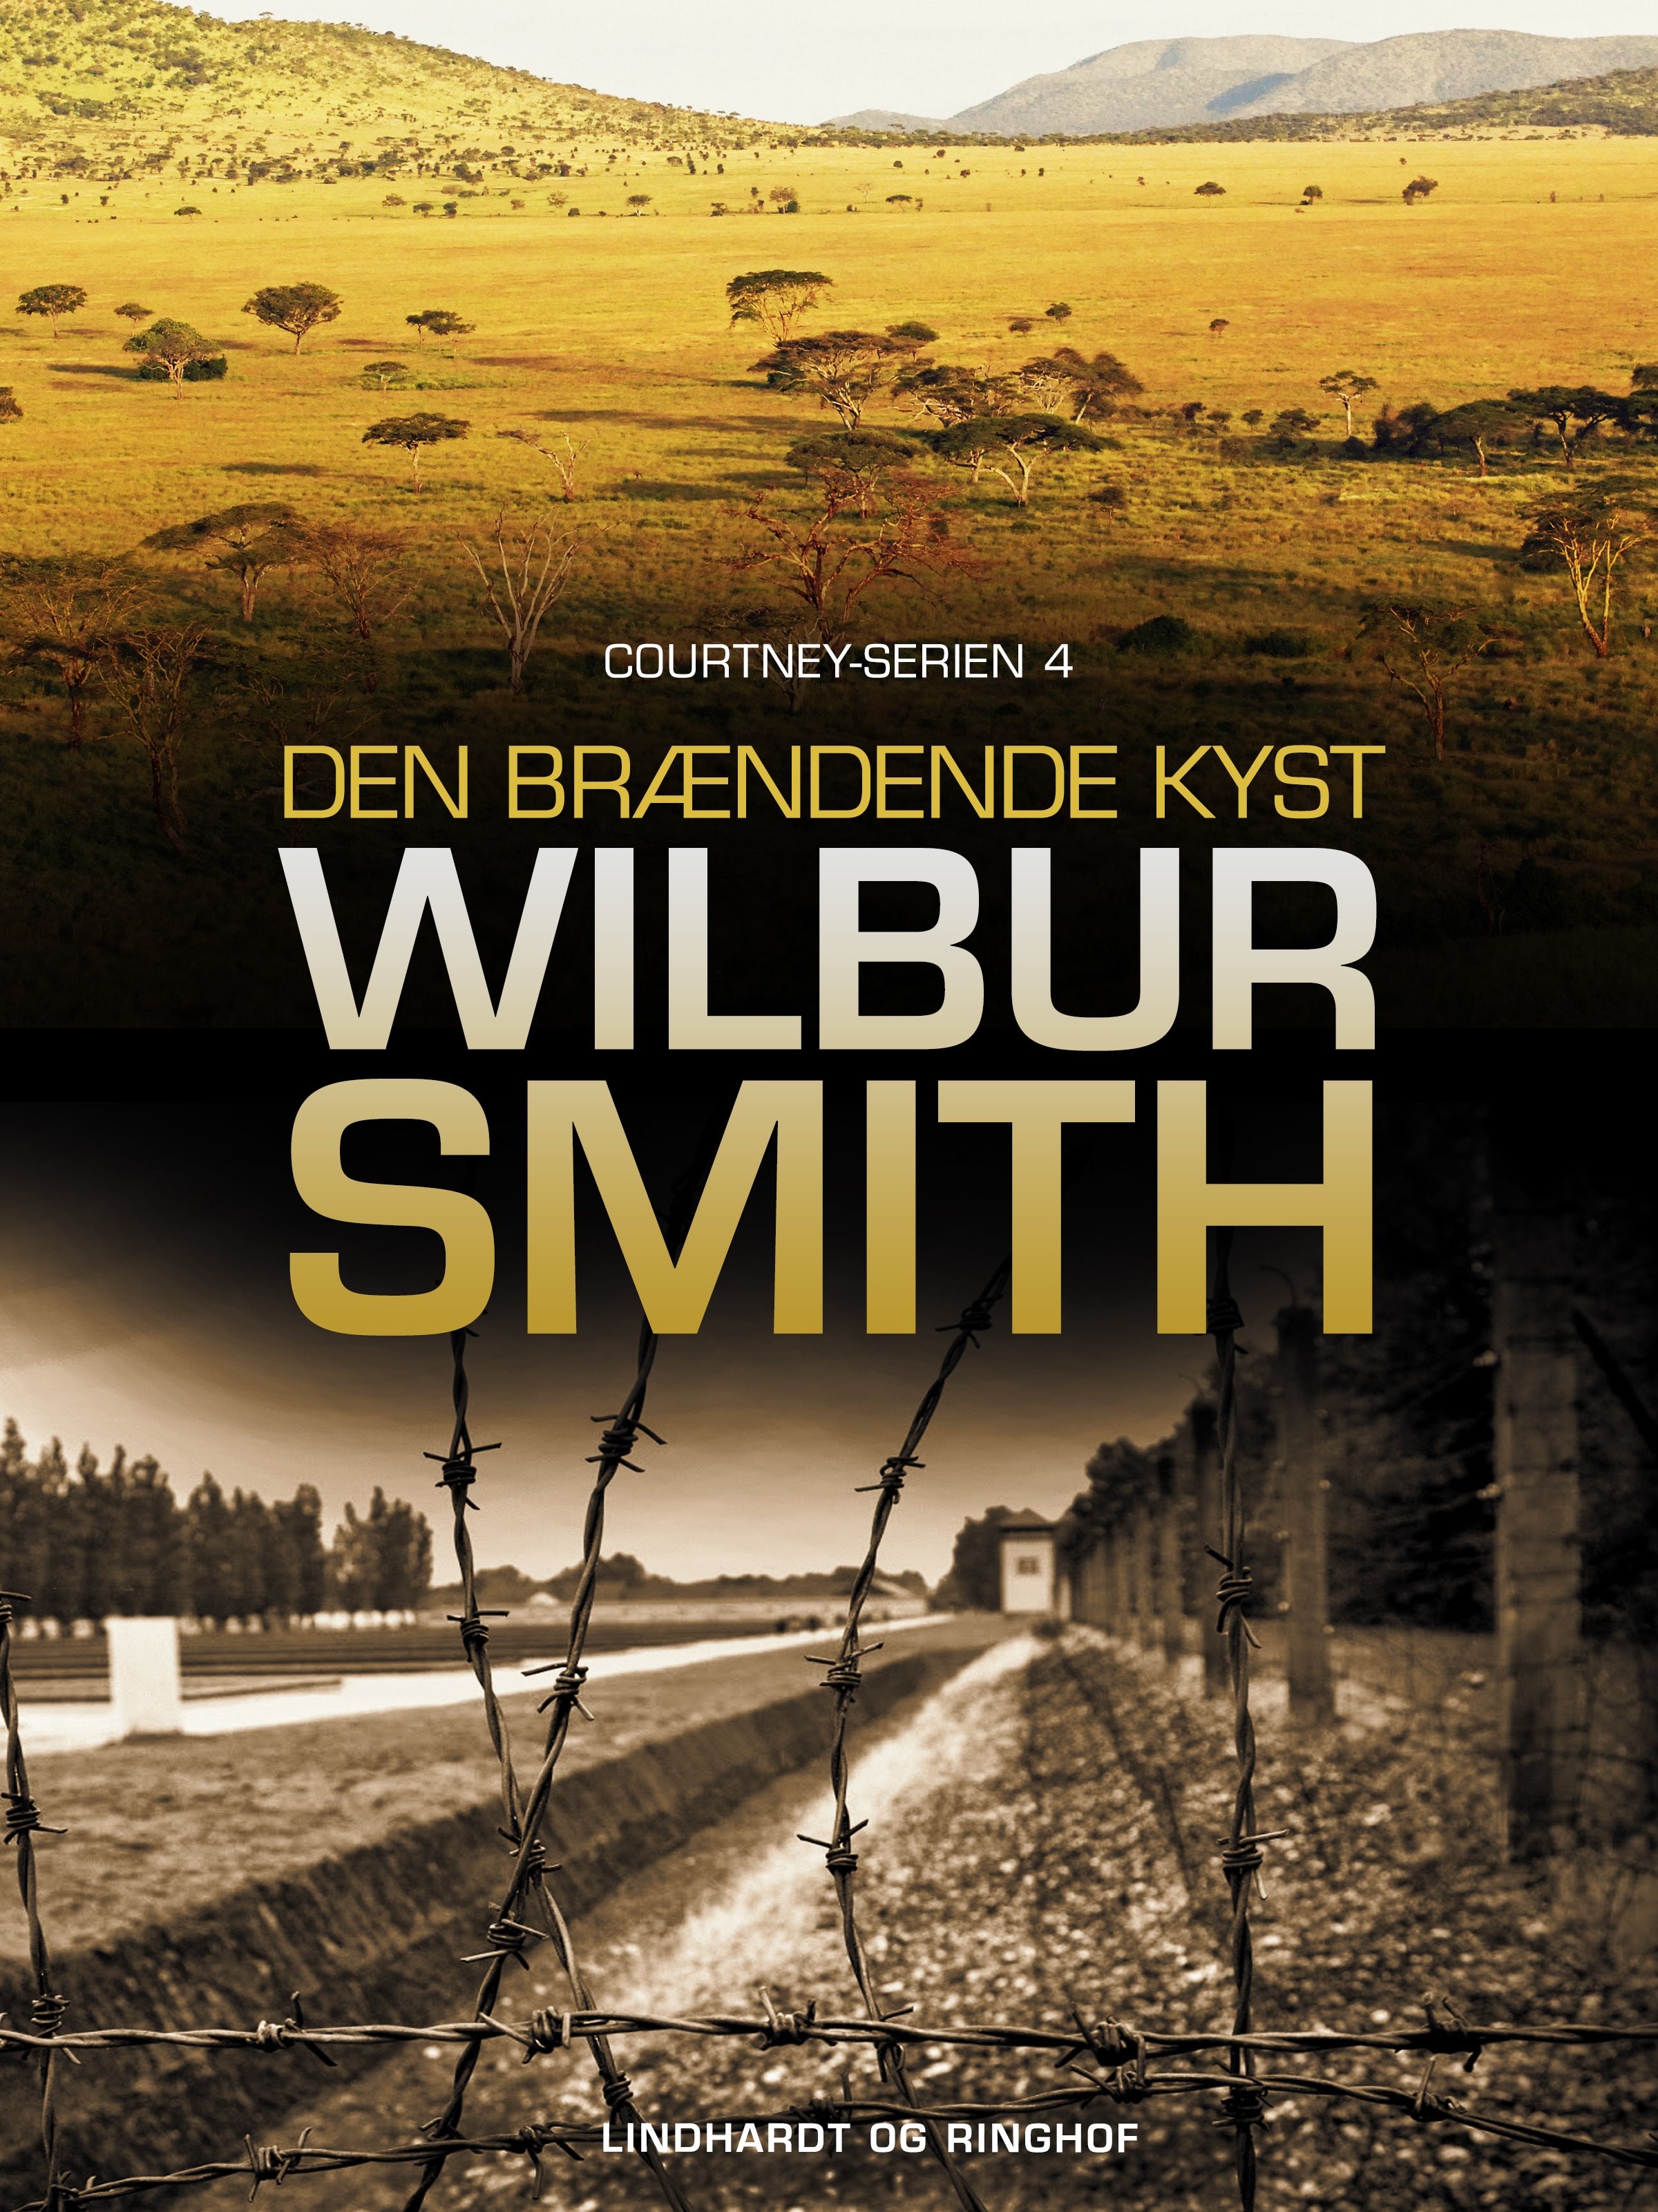 Wilbur Smith, Den brændende kyst, Courtney-serien